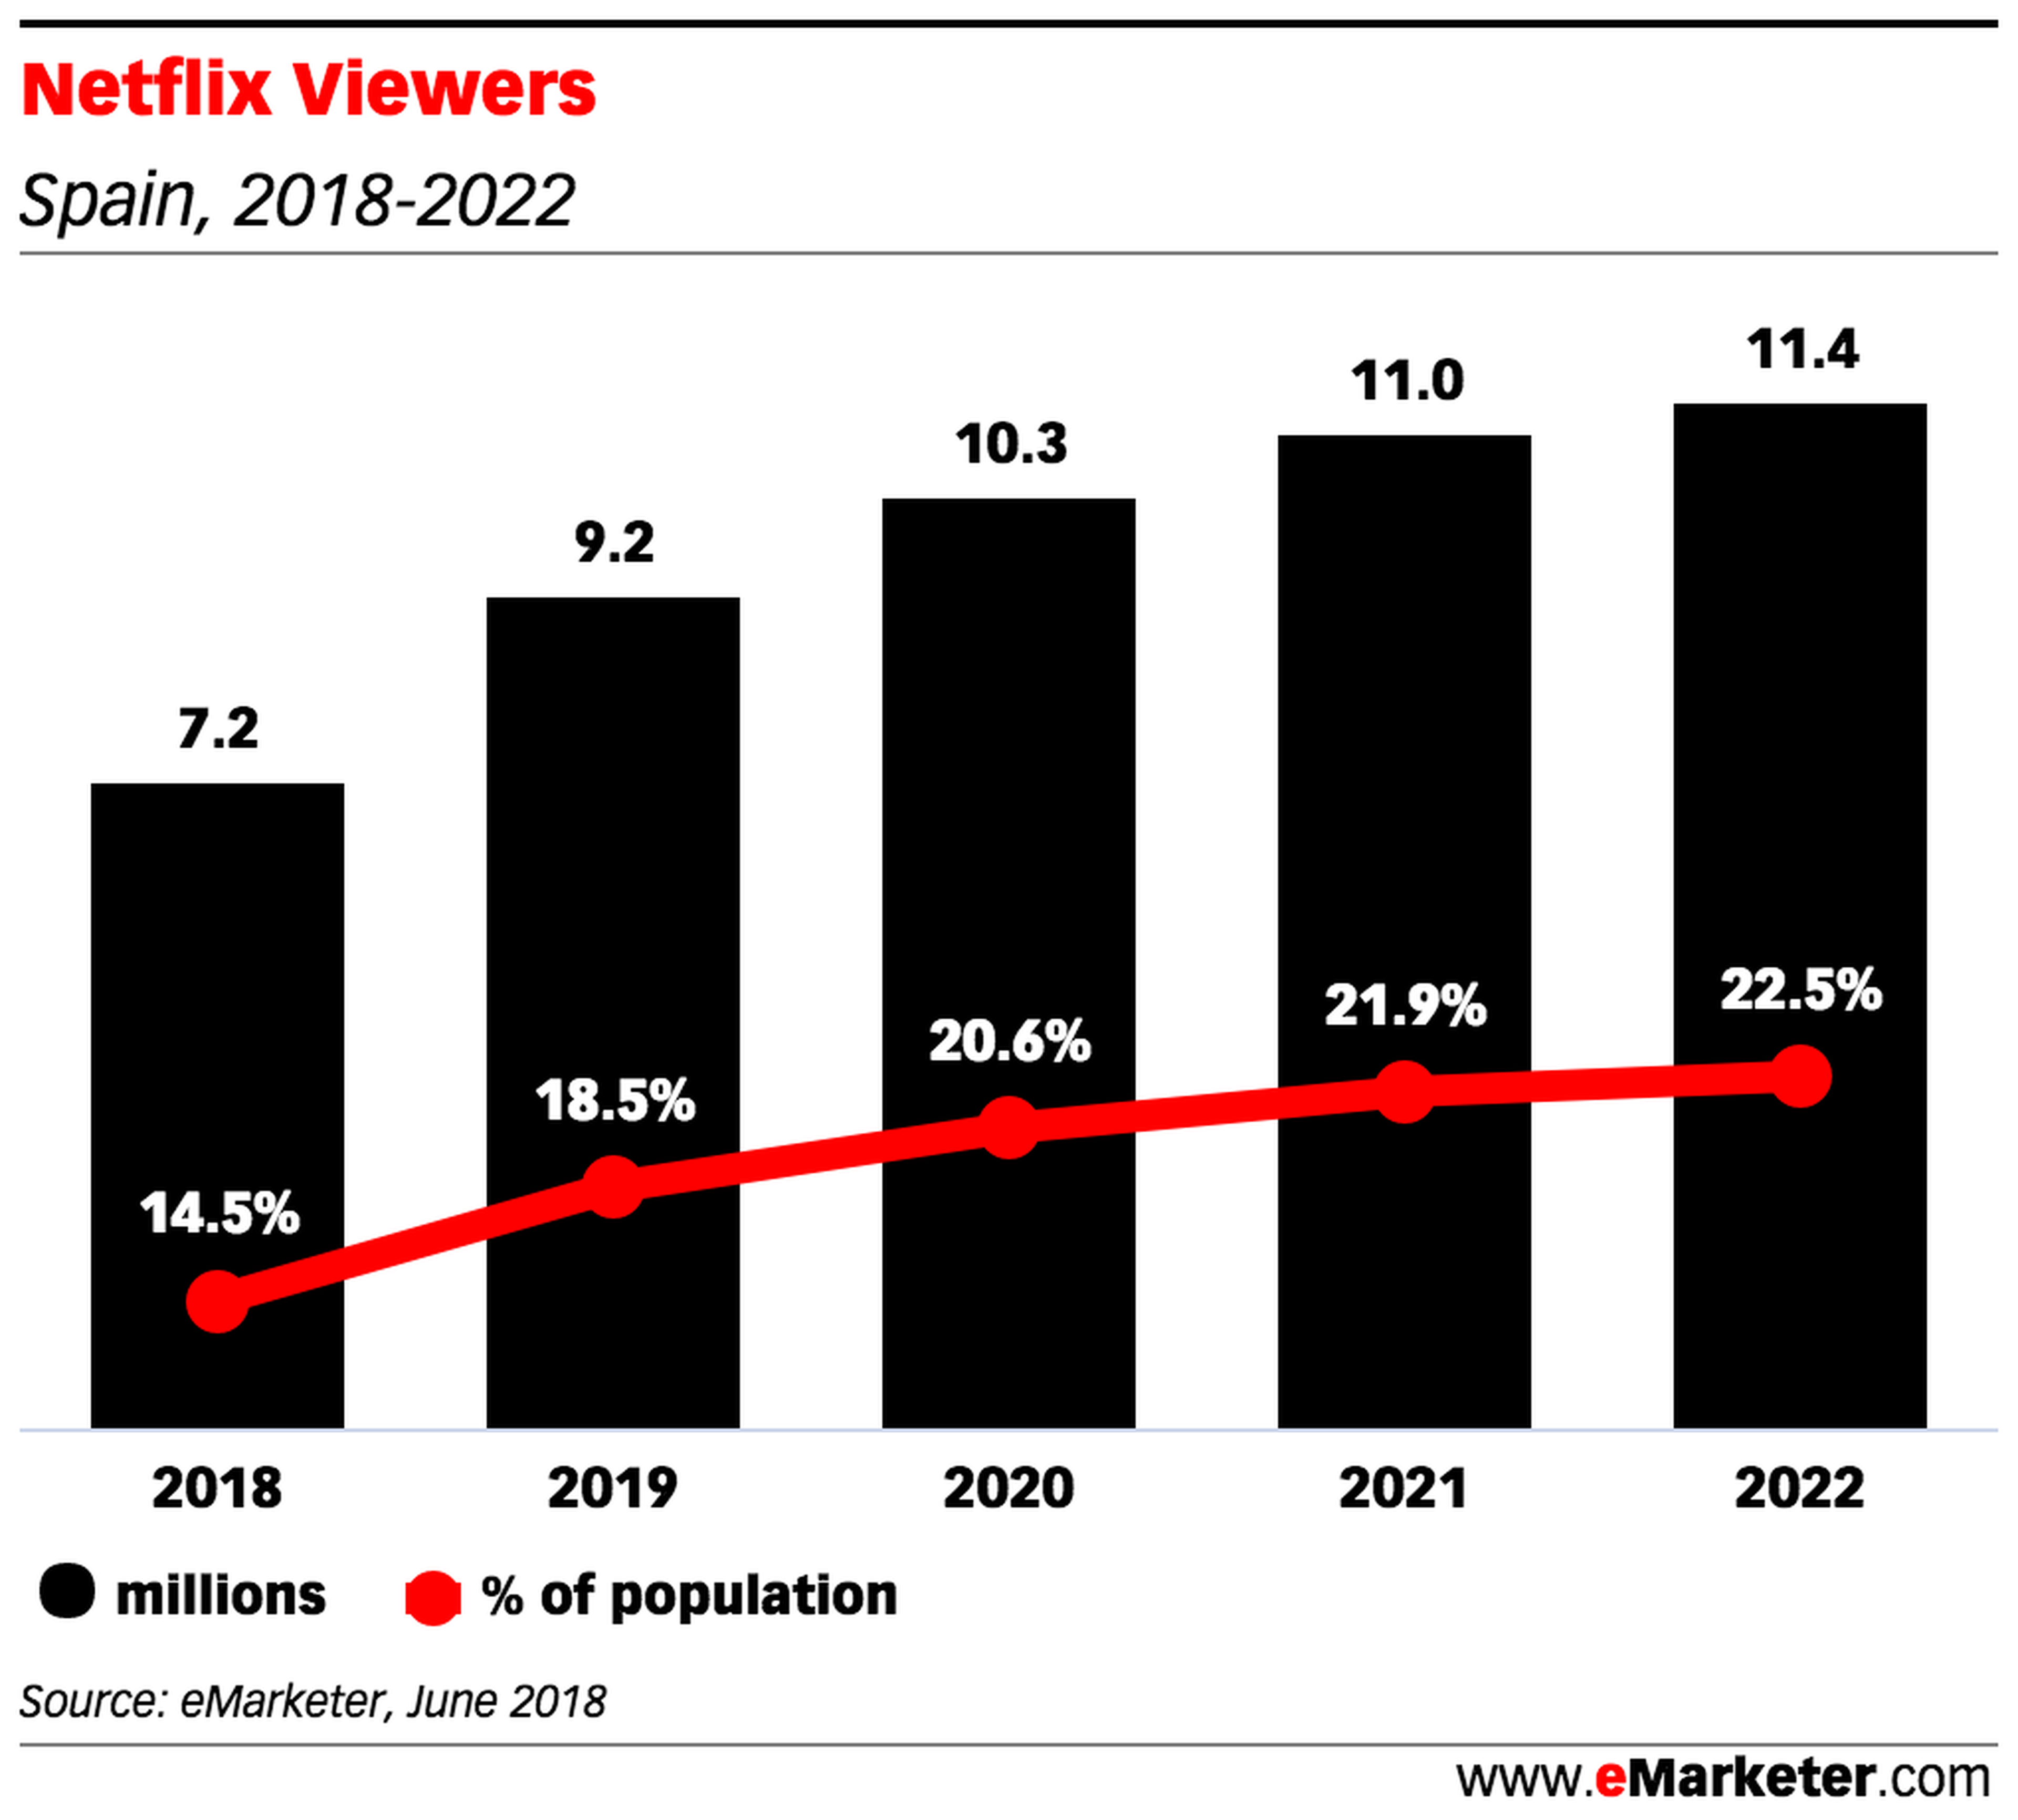 Proyección de los españoles que verán Netflix de 2018 a 2022.